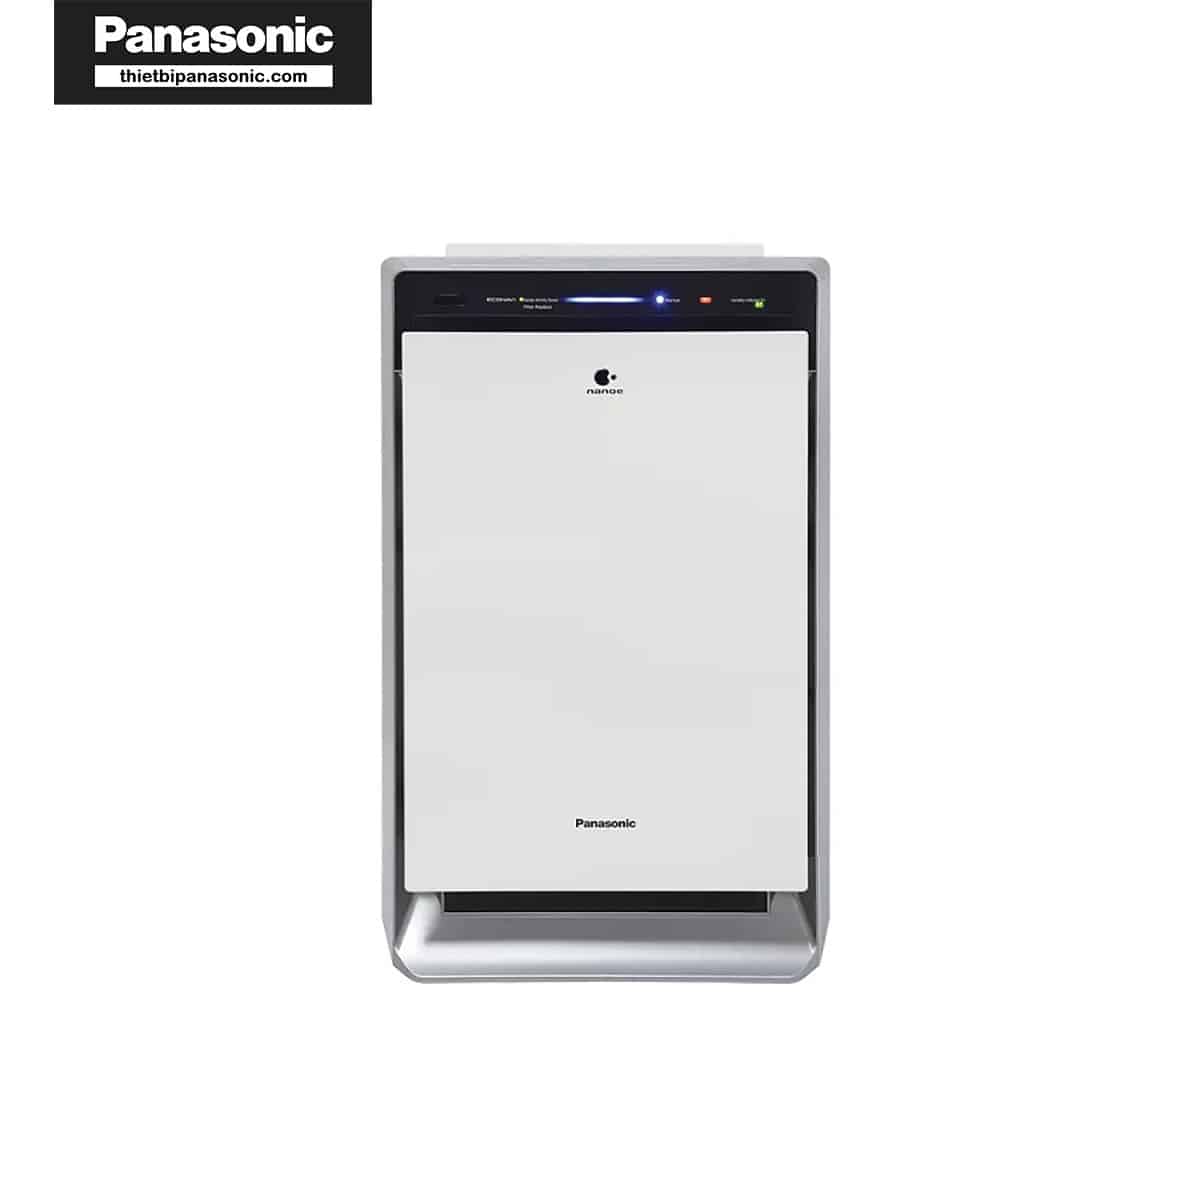 Máy lọc không khí Panasonic F-VXK70A hoạt động ổn định với màng lọc tạo ẩm của Panasonic